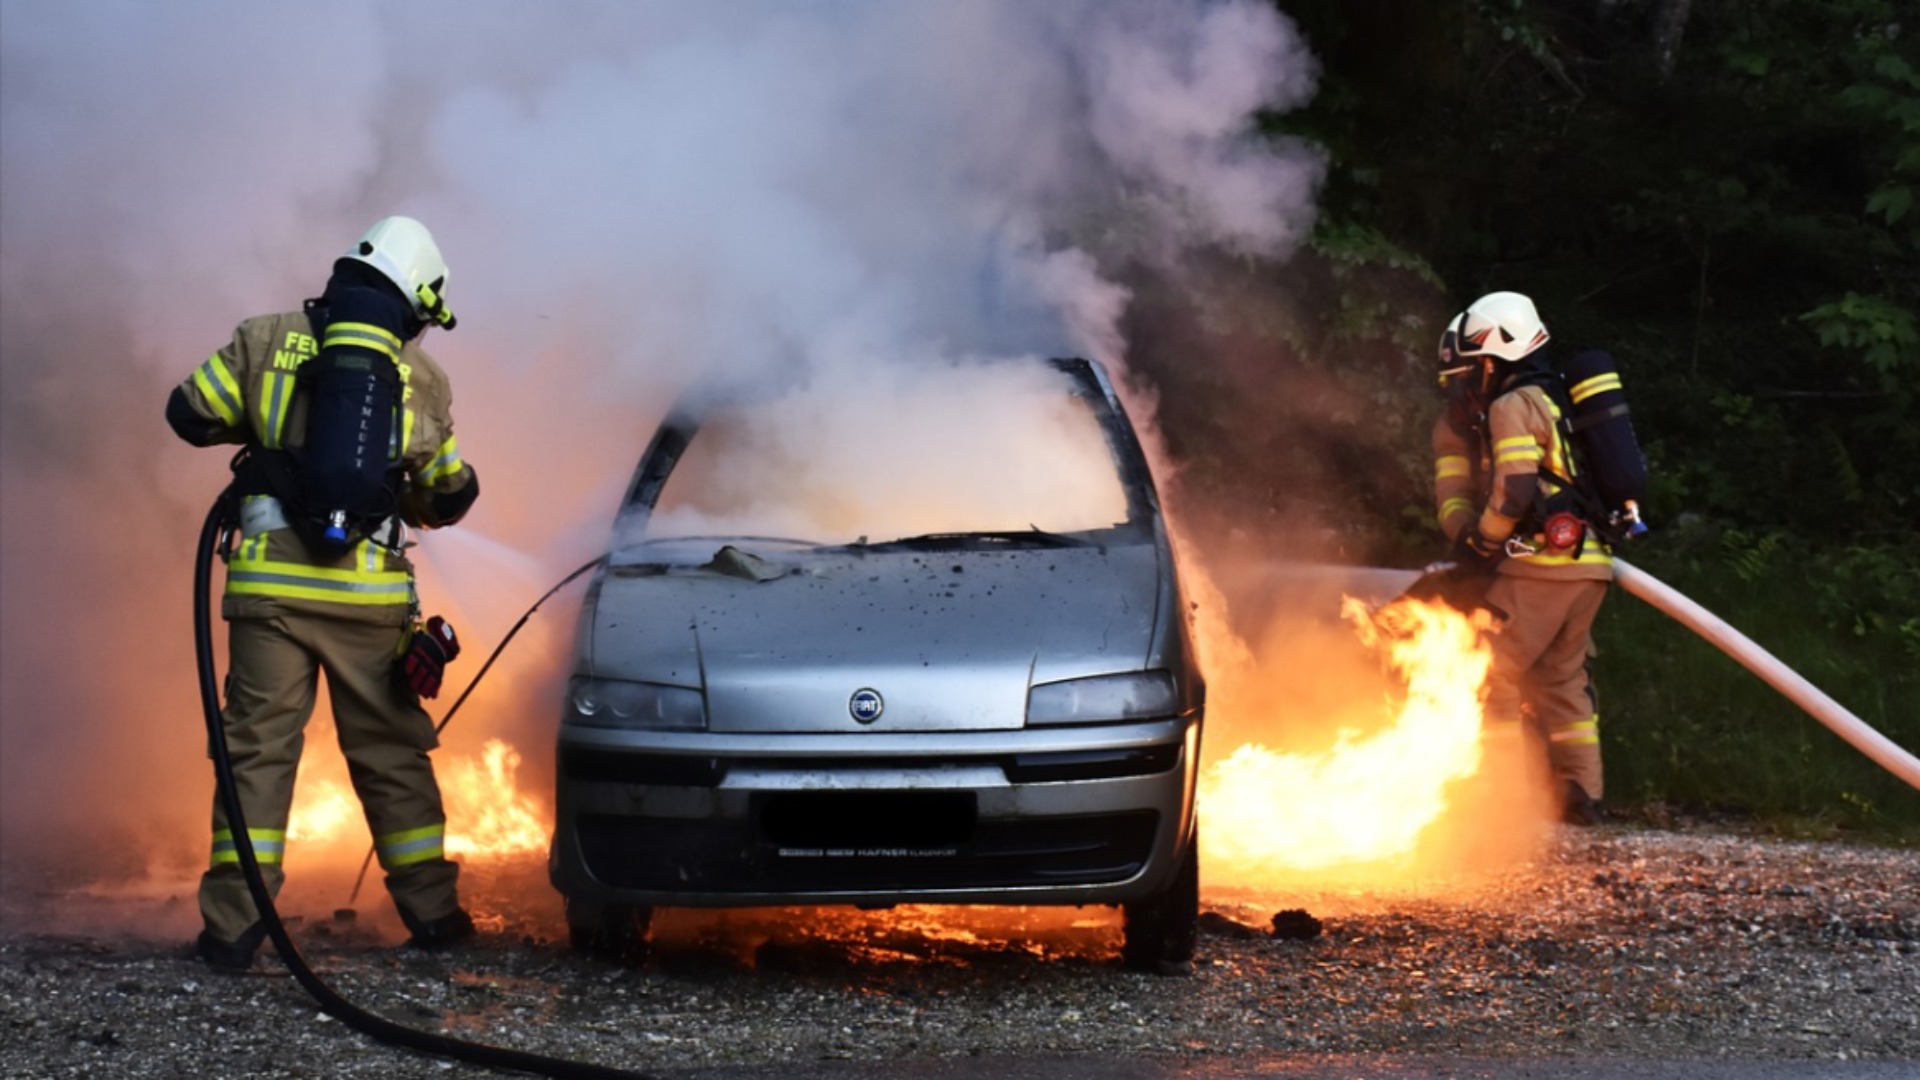 Incendia due auto: incastrato operatore sanitario dall'occhio digitale